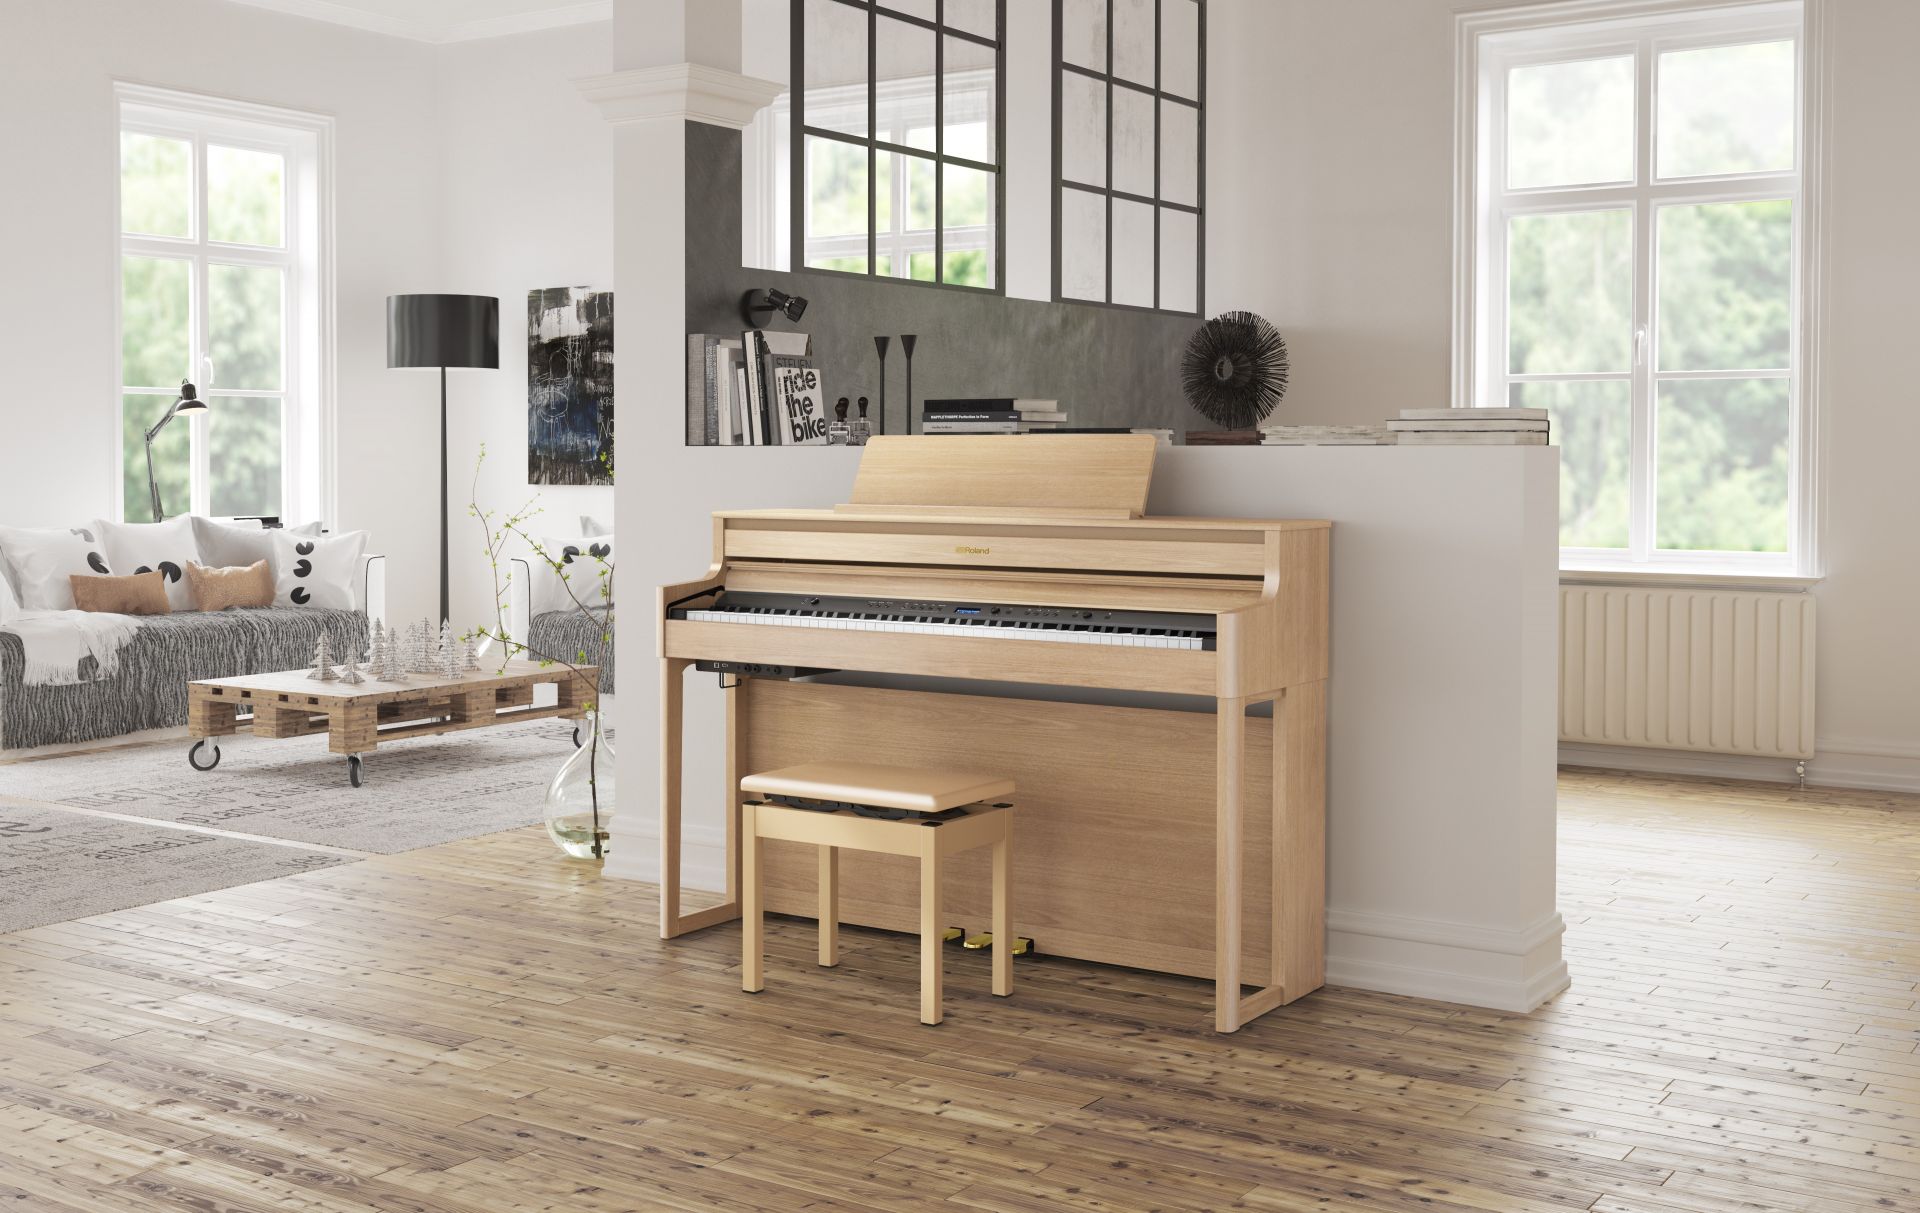 Rolandの最新ホームデジタルピアノ HP700series「HP704/HP702」店頭にてお試し頂けます！